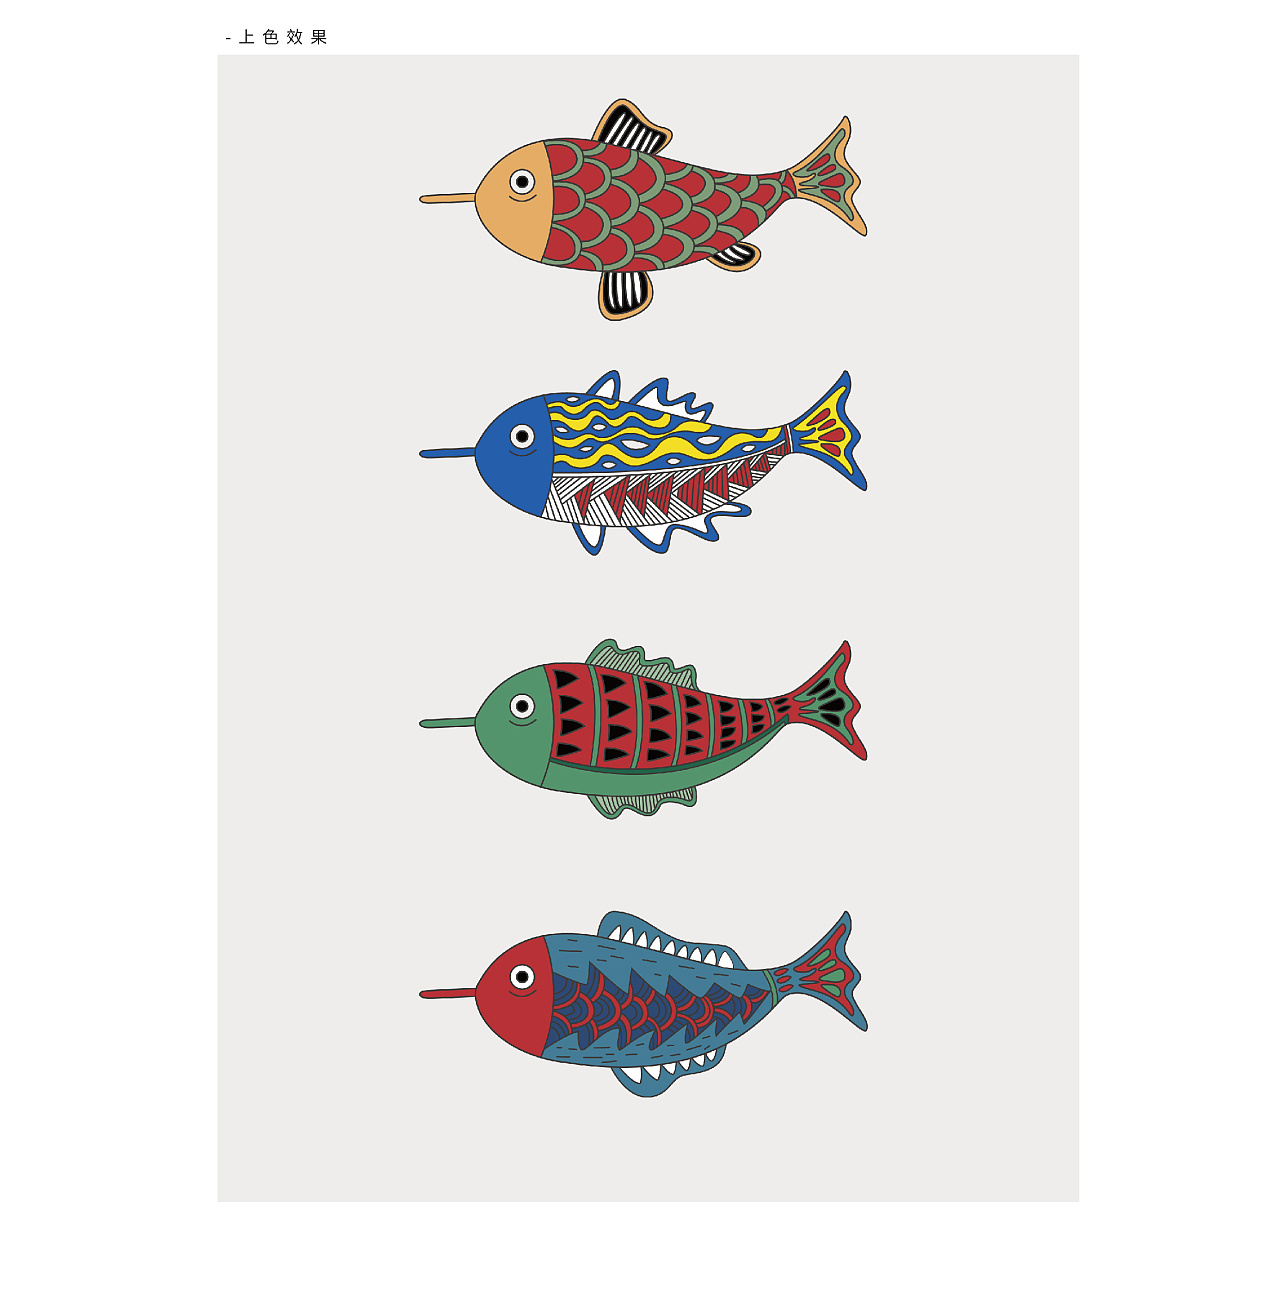 喜鱼-以鱼为元素作图形创意设计